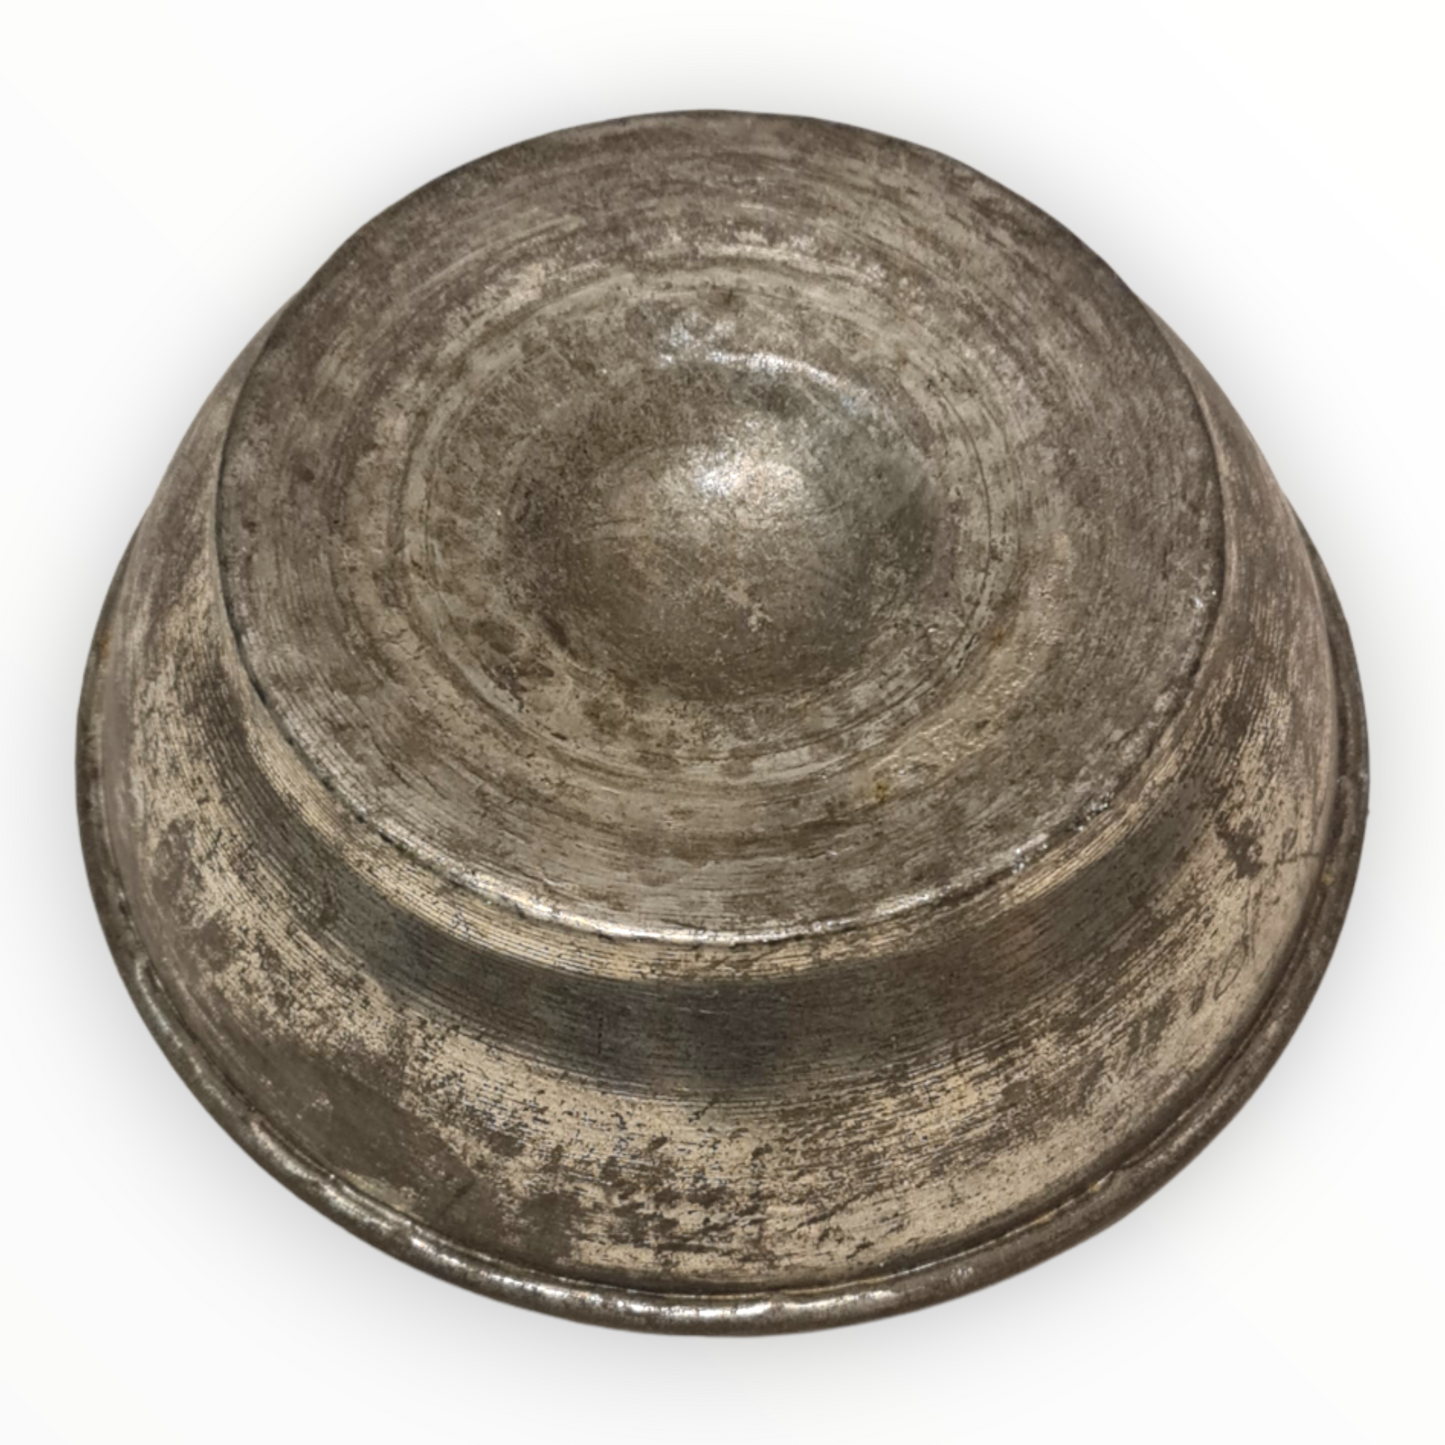 Antique Turkish Hammam Bowl - Turkish Bath Copper Bowl